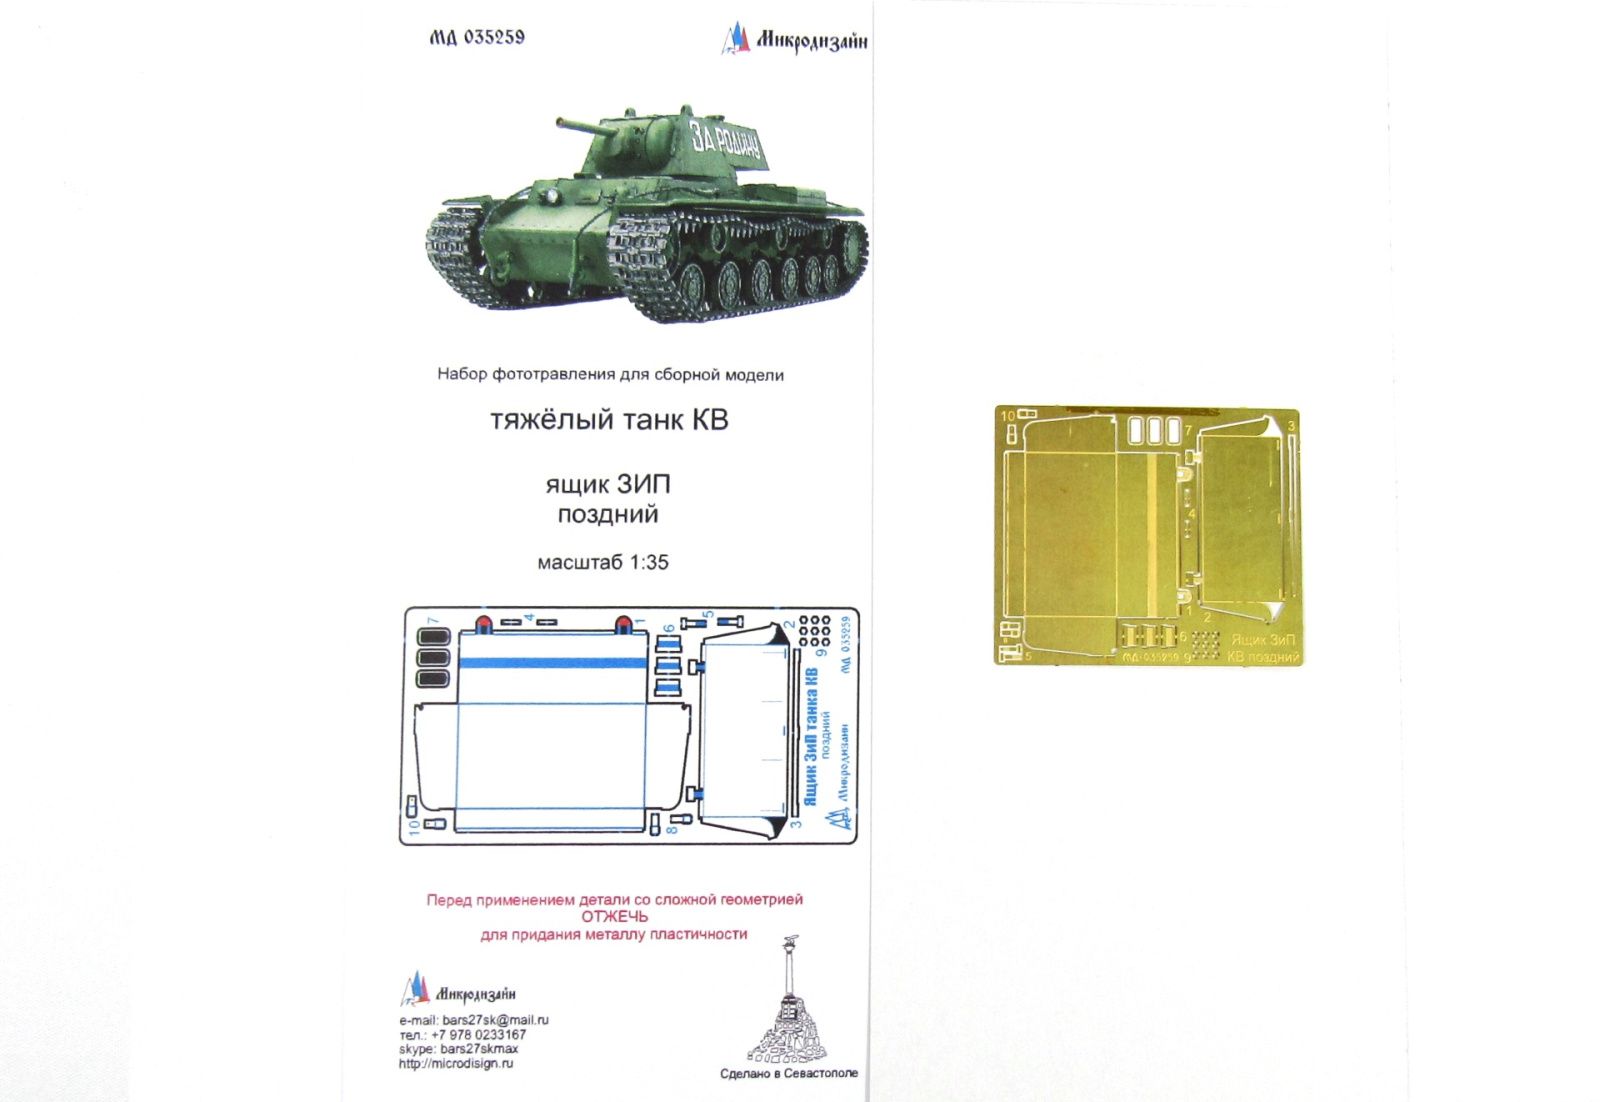 SIP (late) box of KV tank - imodeller.store